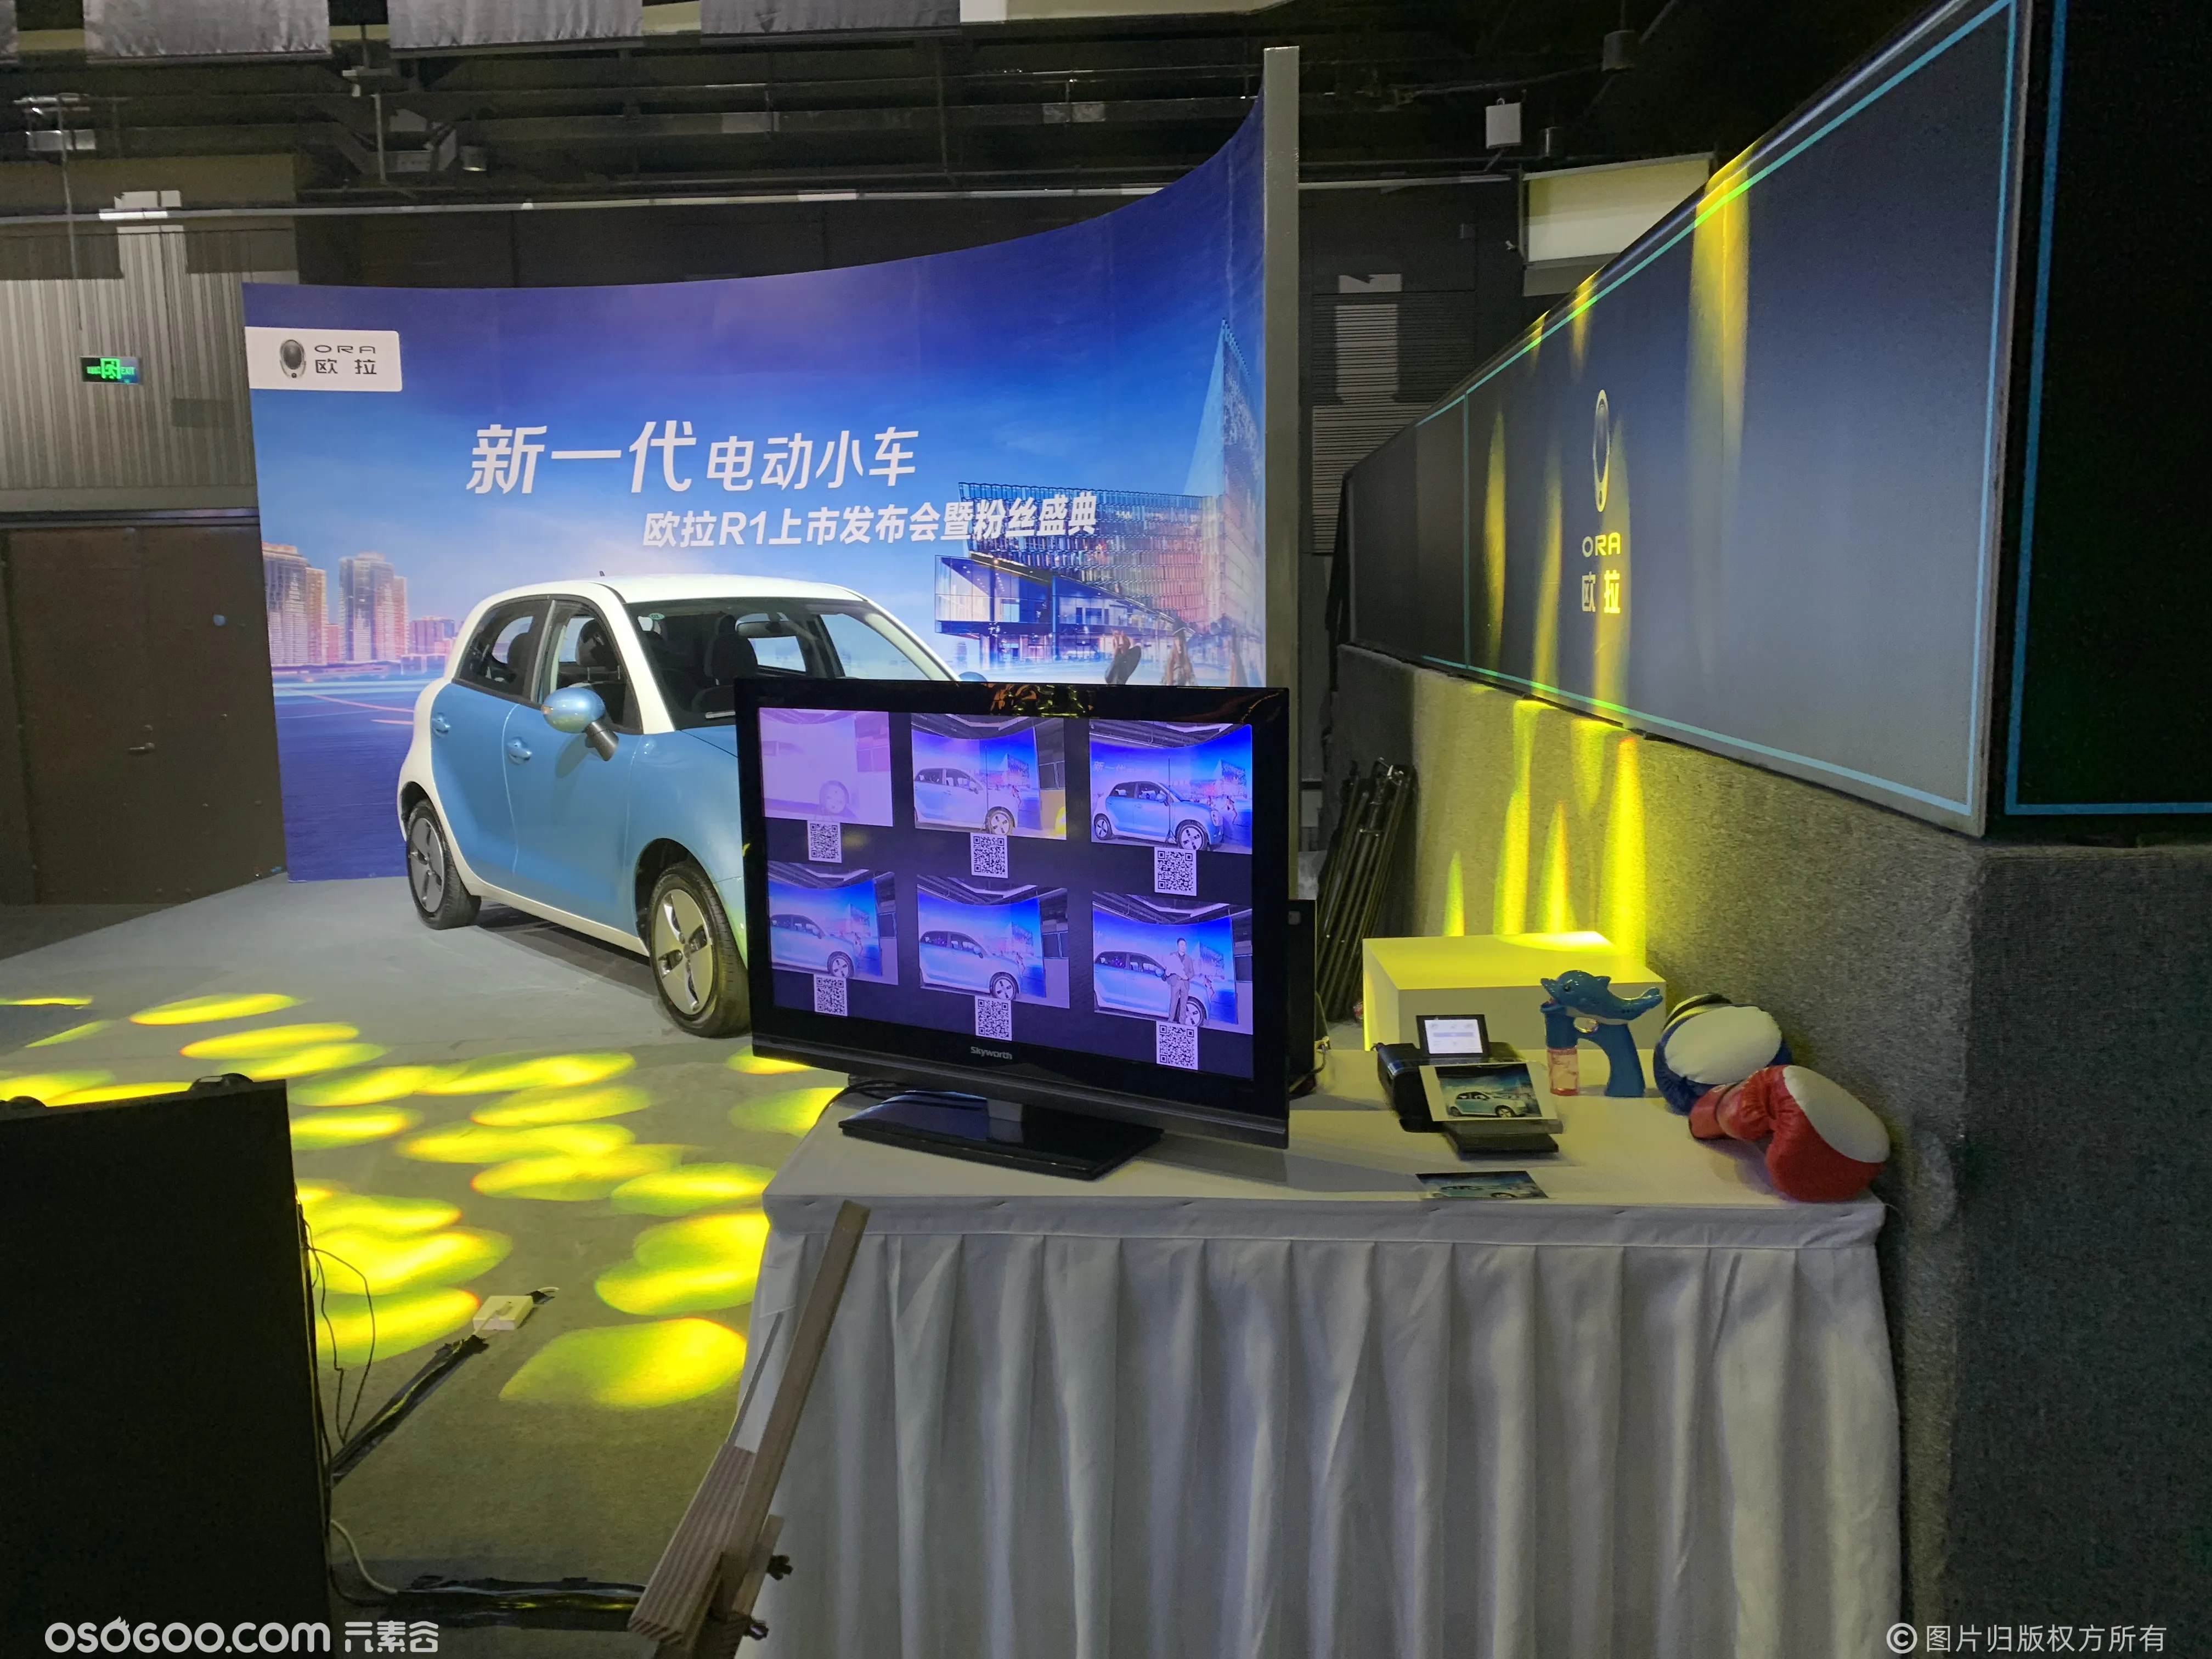 新一代电动小车欧拉R1上市发布会北京站子弹时间拍照互动助力